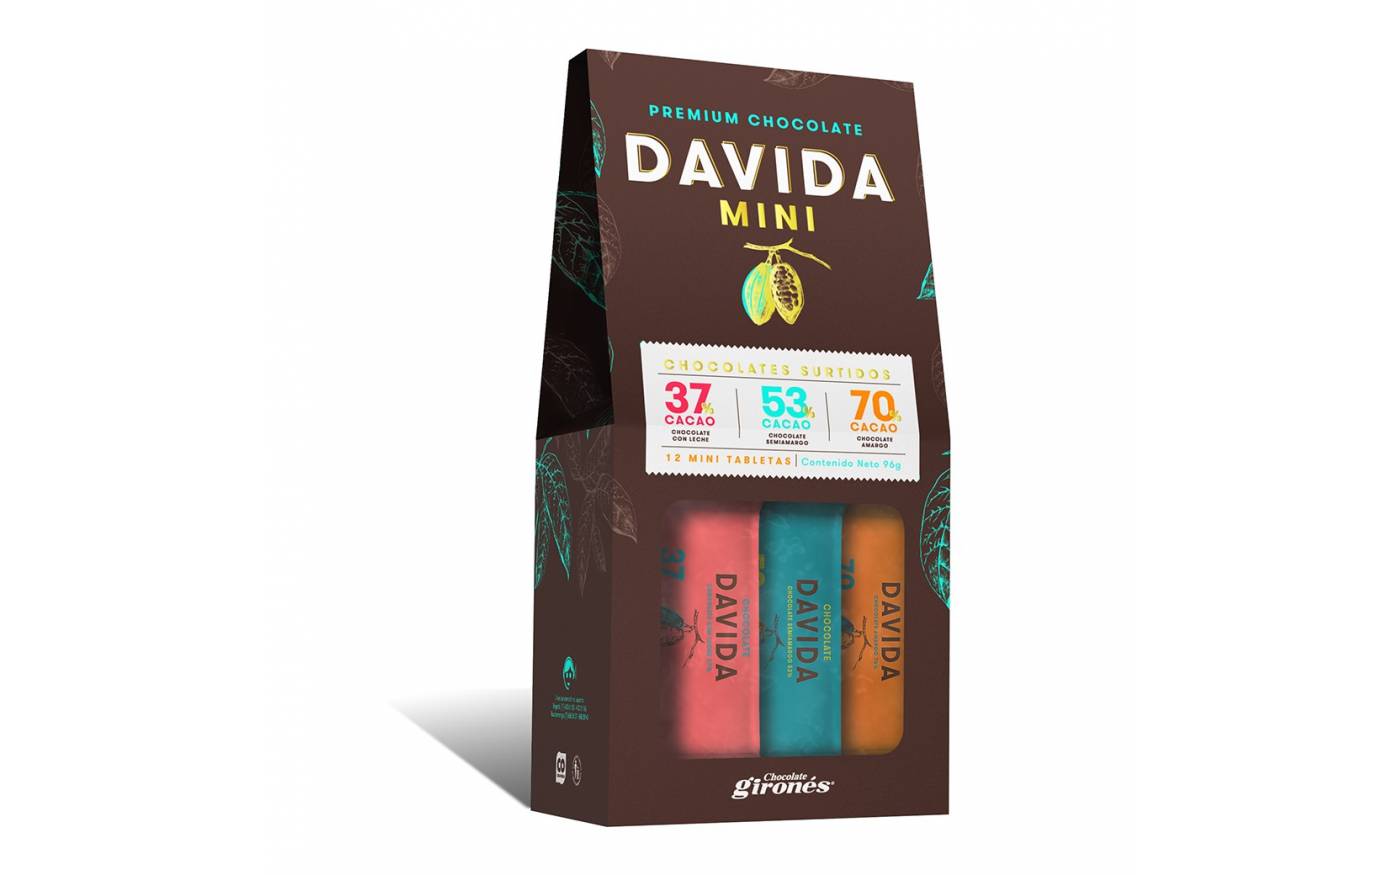 Mini Barras Surtidas 37%, 53% y 70% Cacao DAVIDA